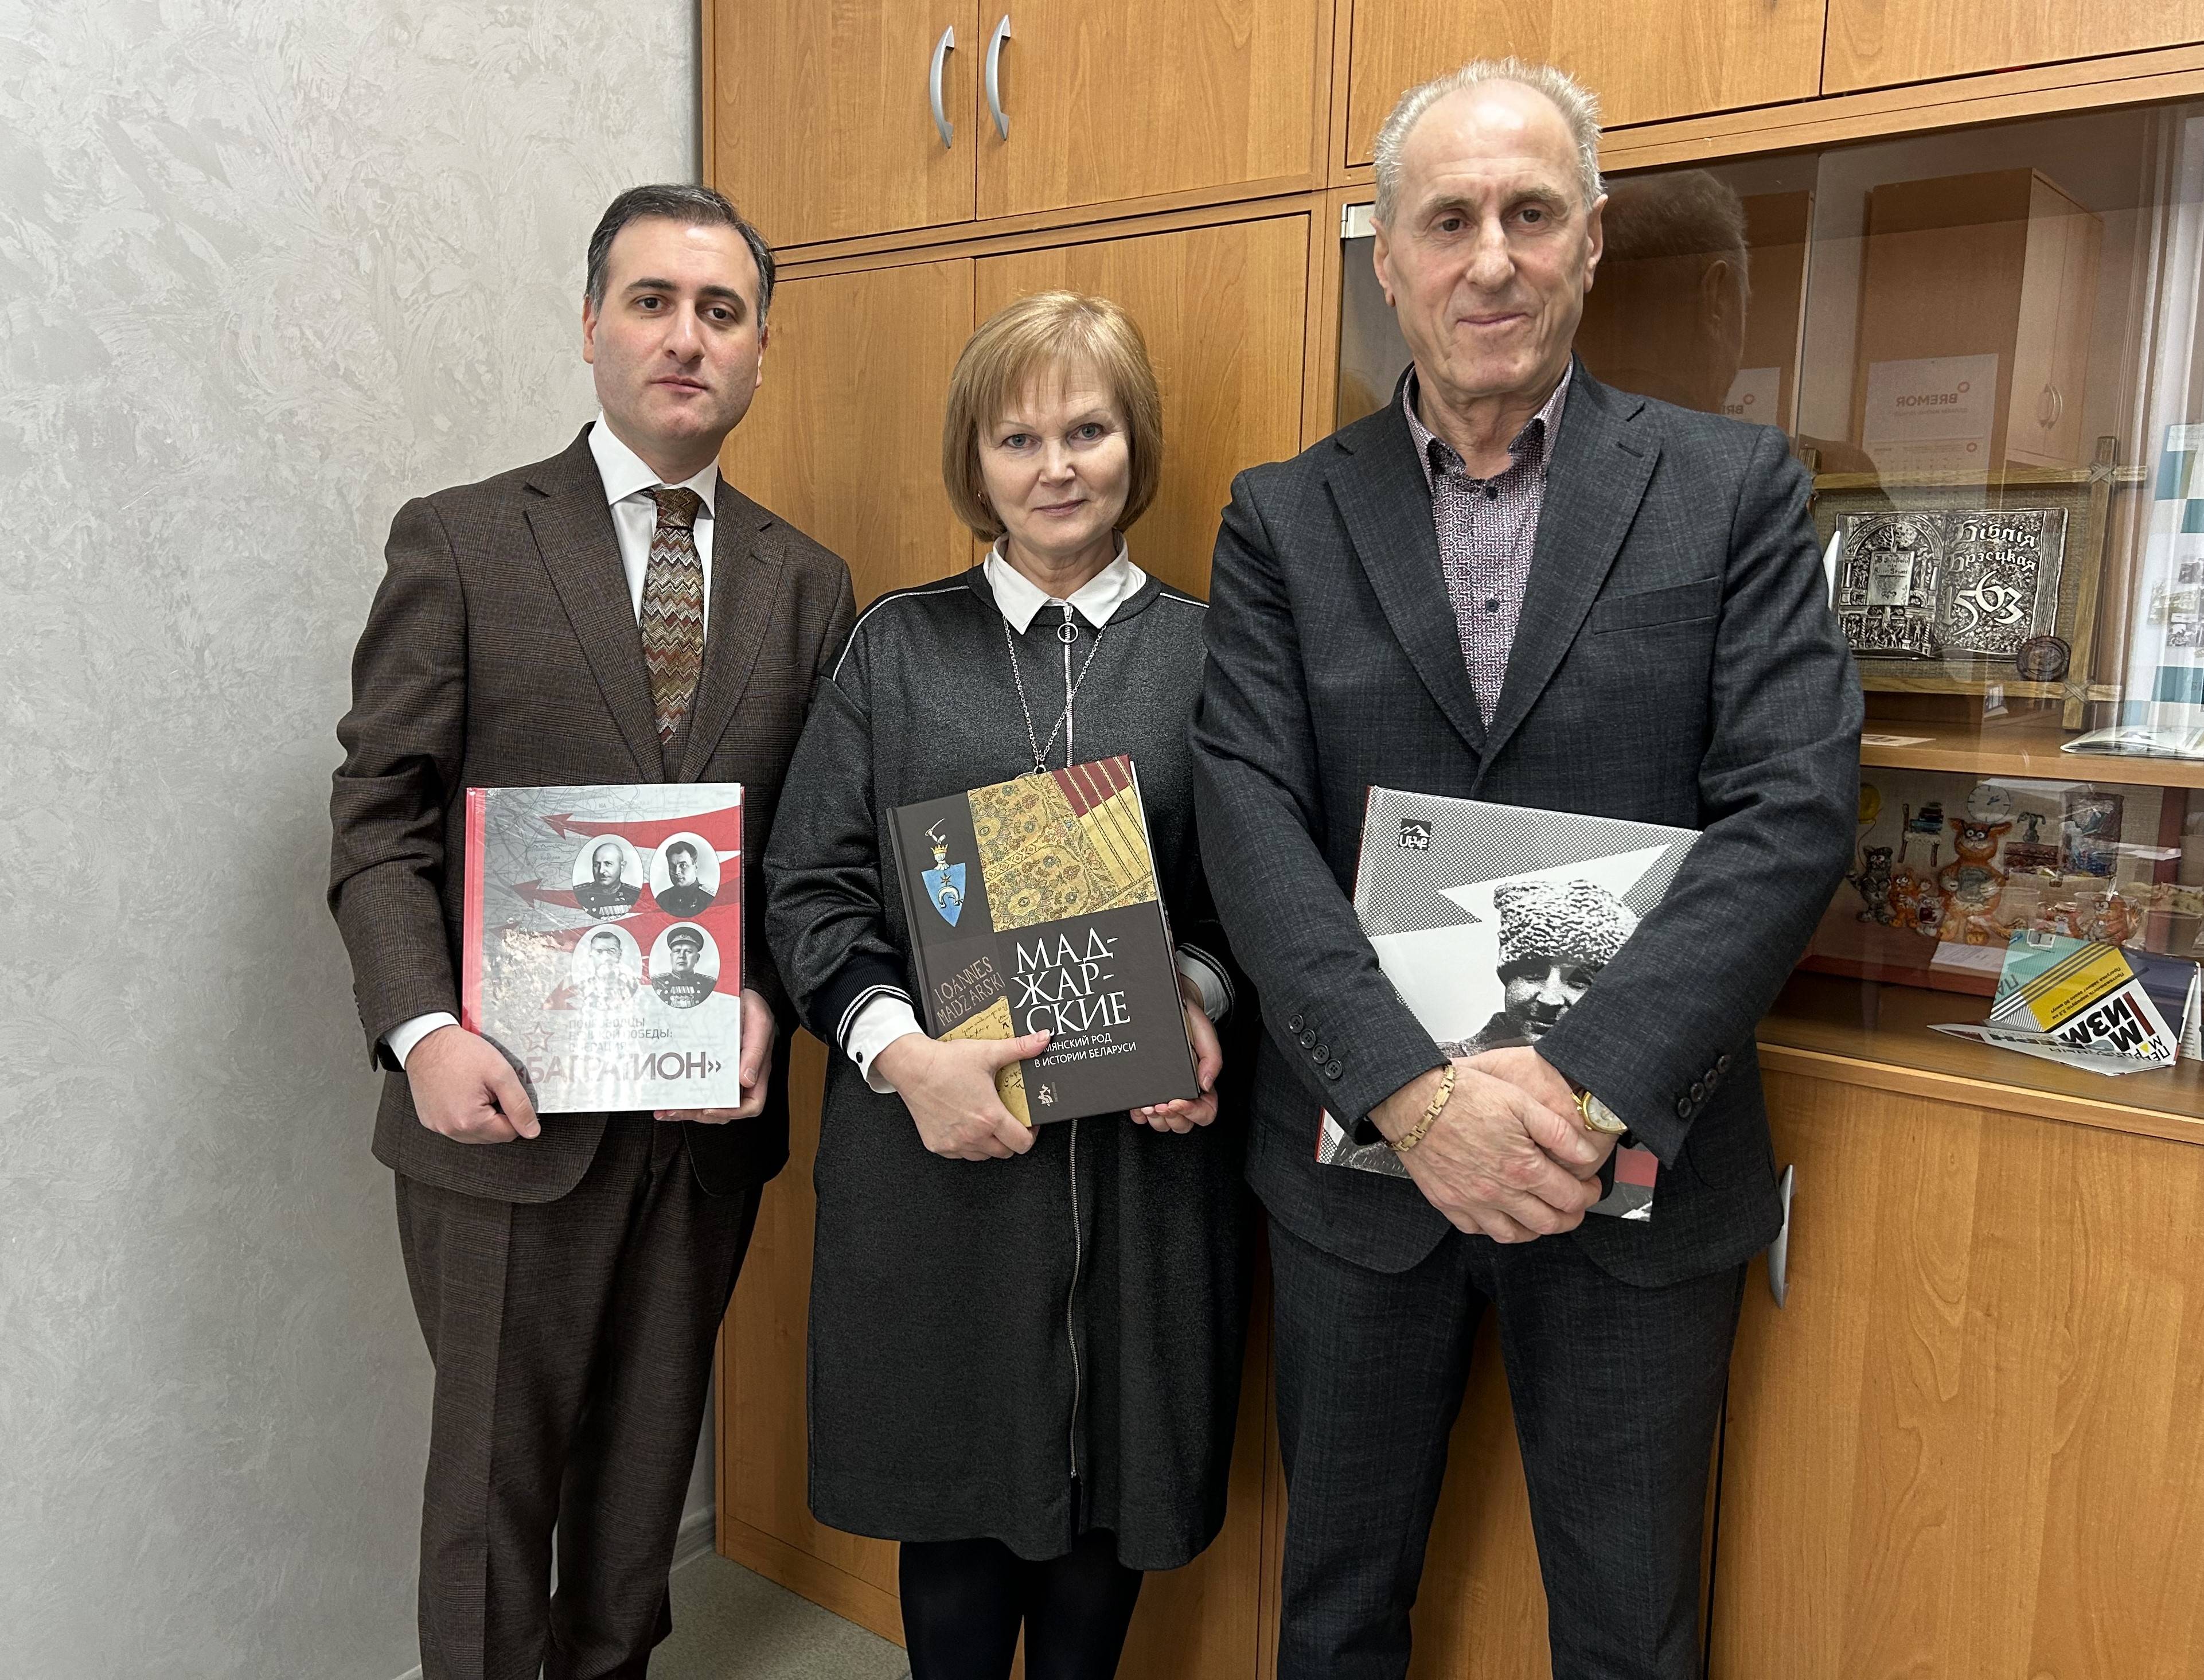 Բրեստի մարզային գրադարանի գրքային ֆոնդը համալրվեց հայկական թեմատիկայով գրականությամբ